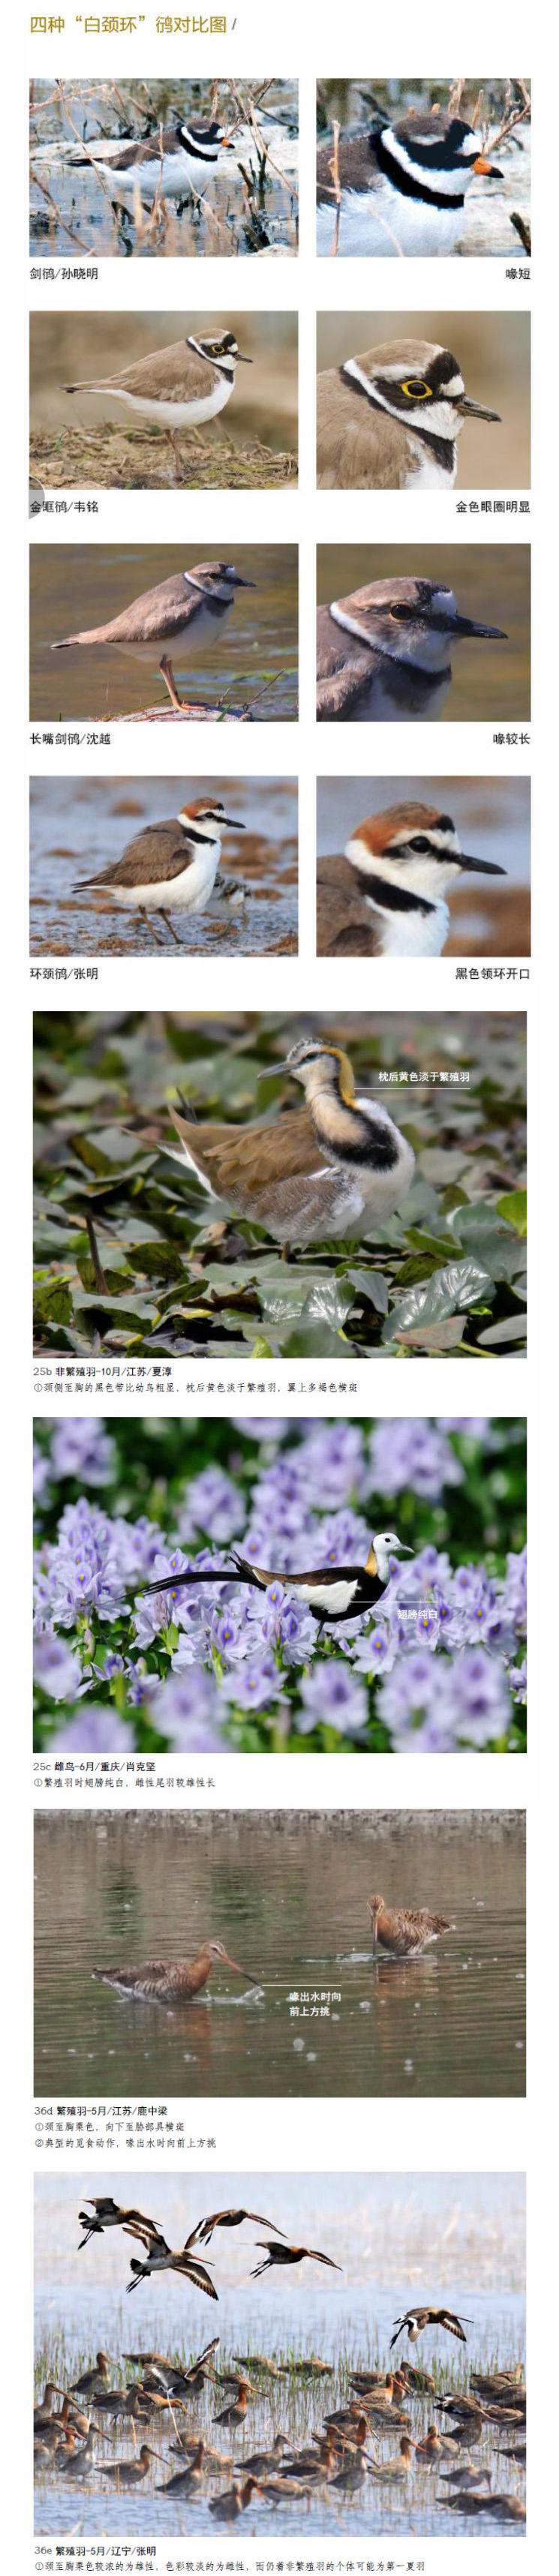 中国鳥類図鑑 猛禽版